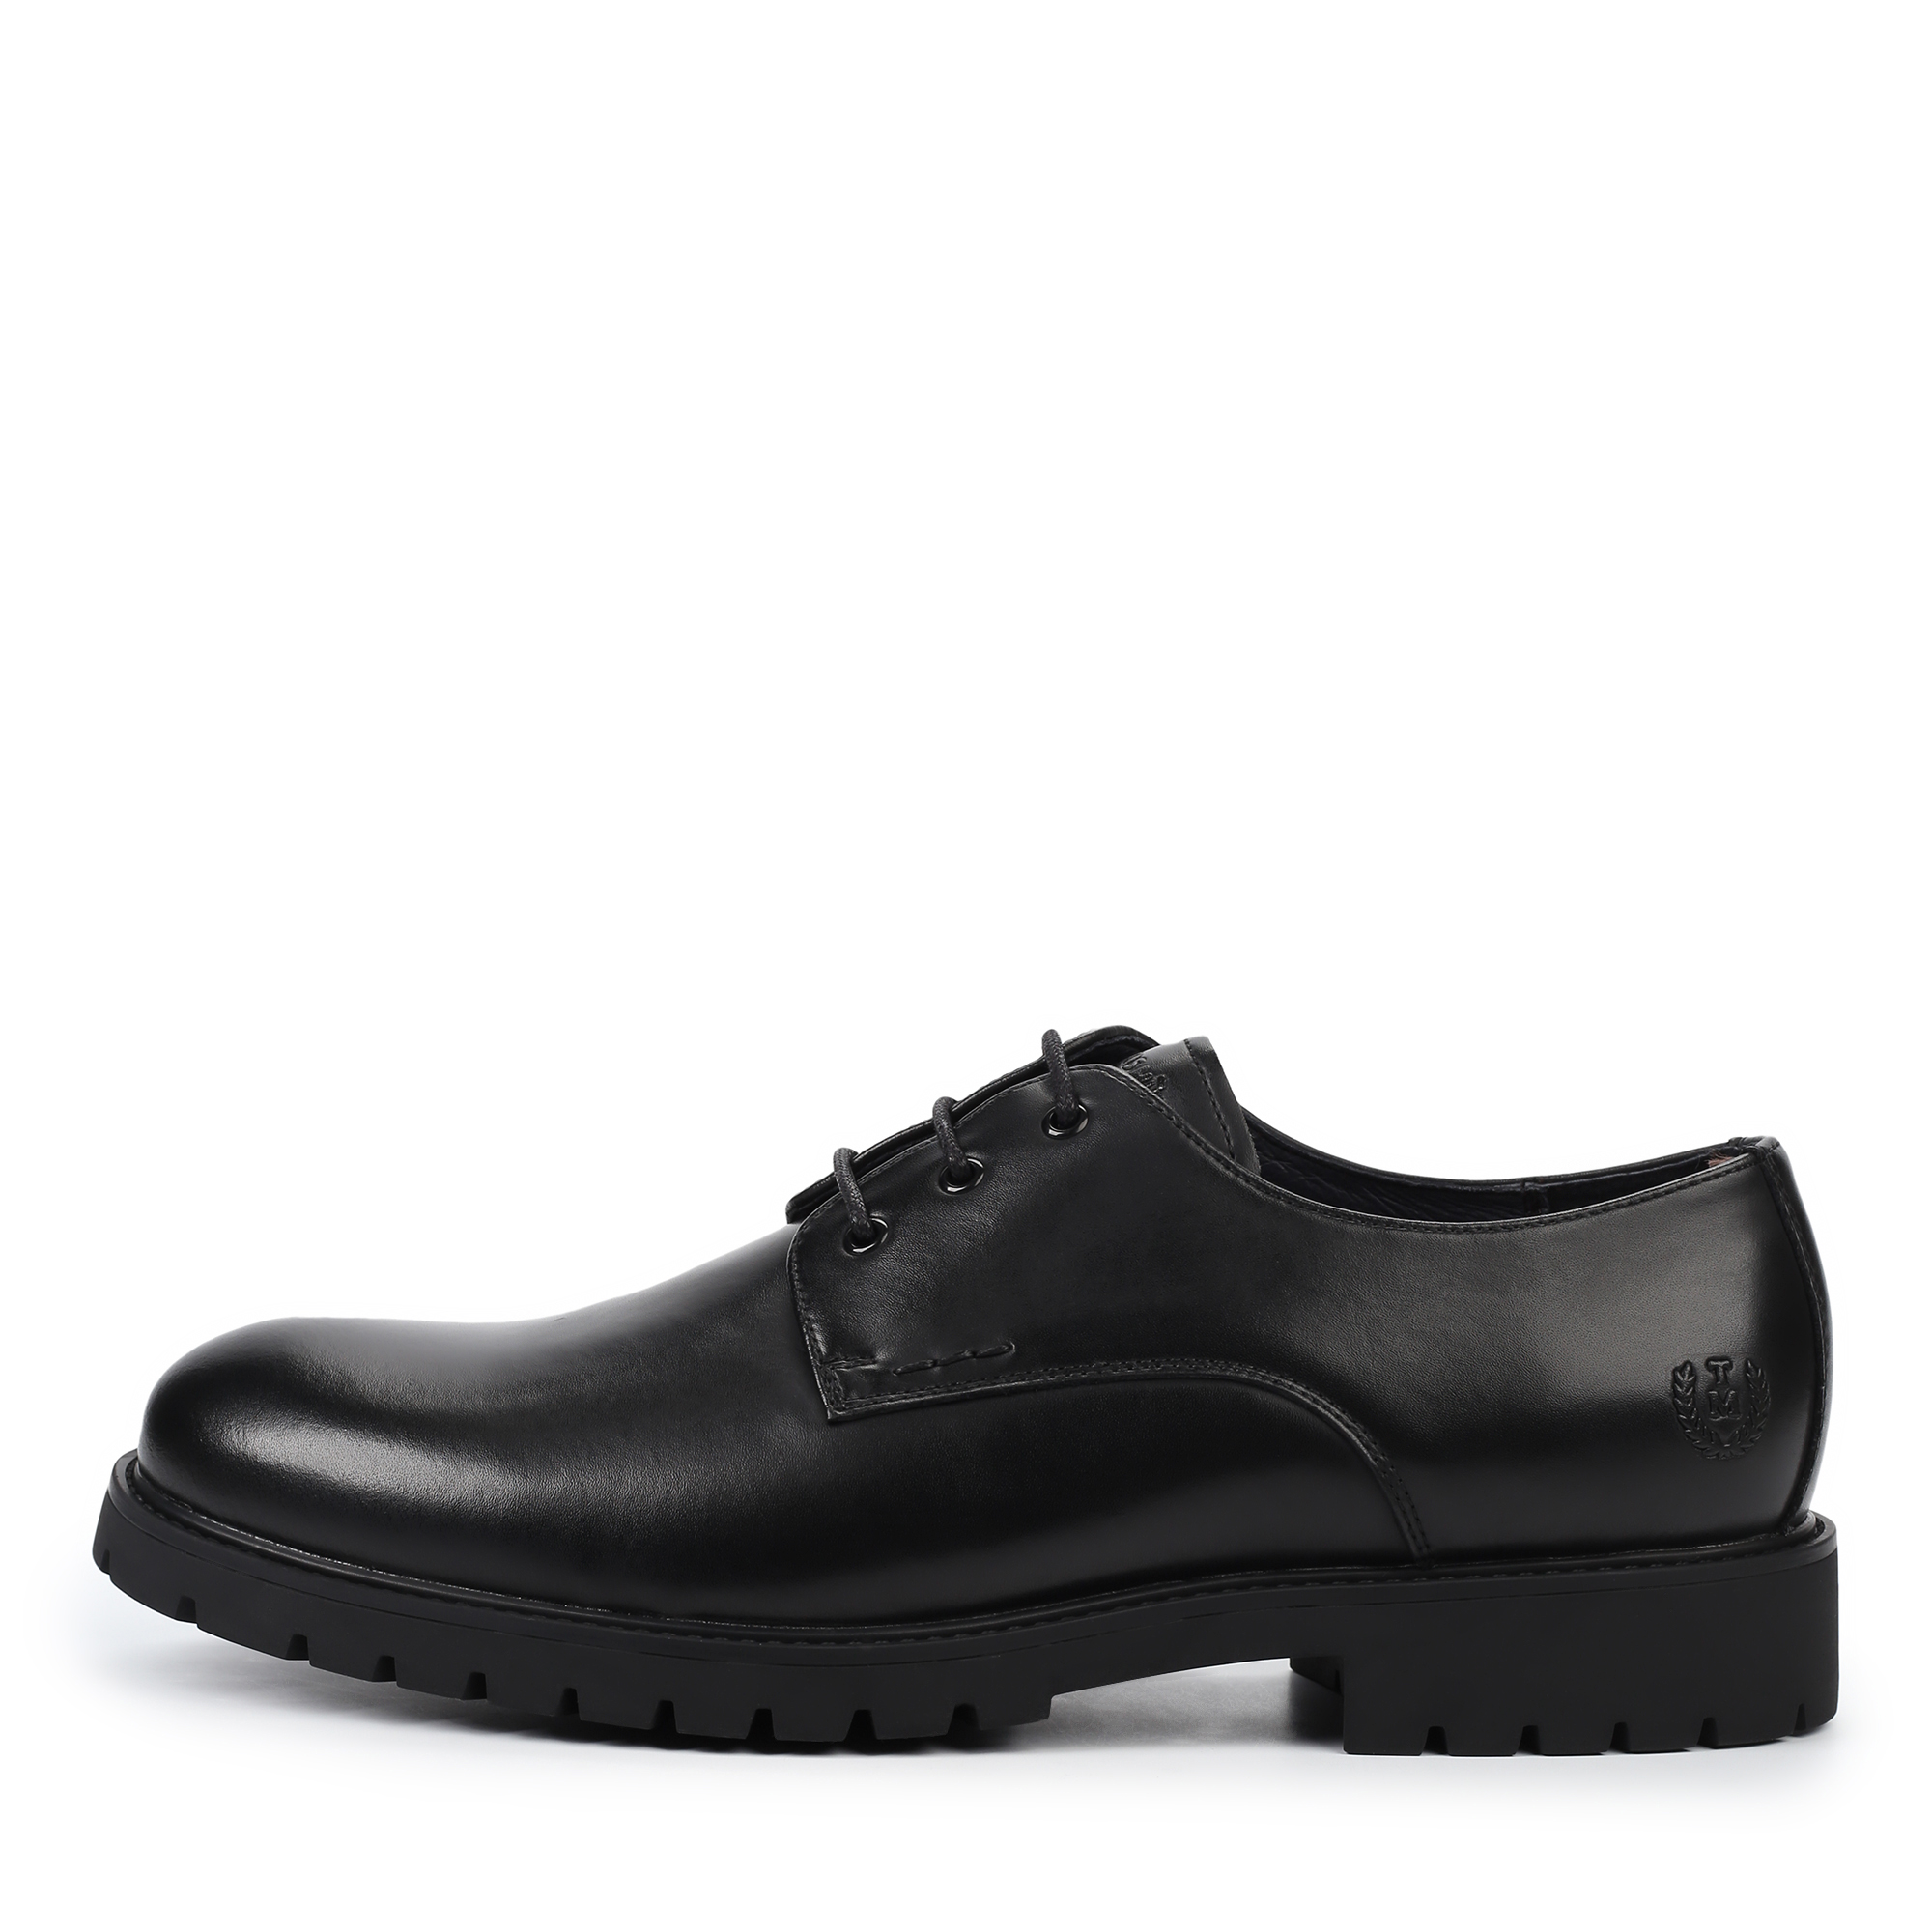 Туфли Thomas Munz 058-3417A-1602, цвет черный, размер 41